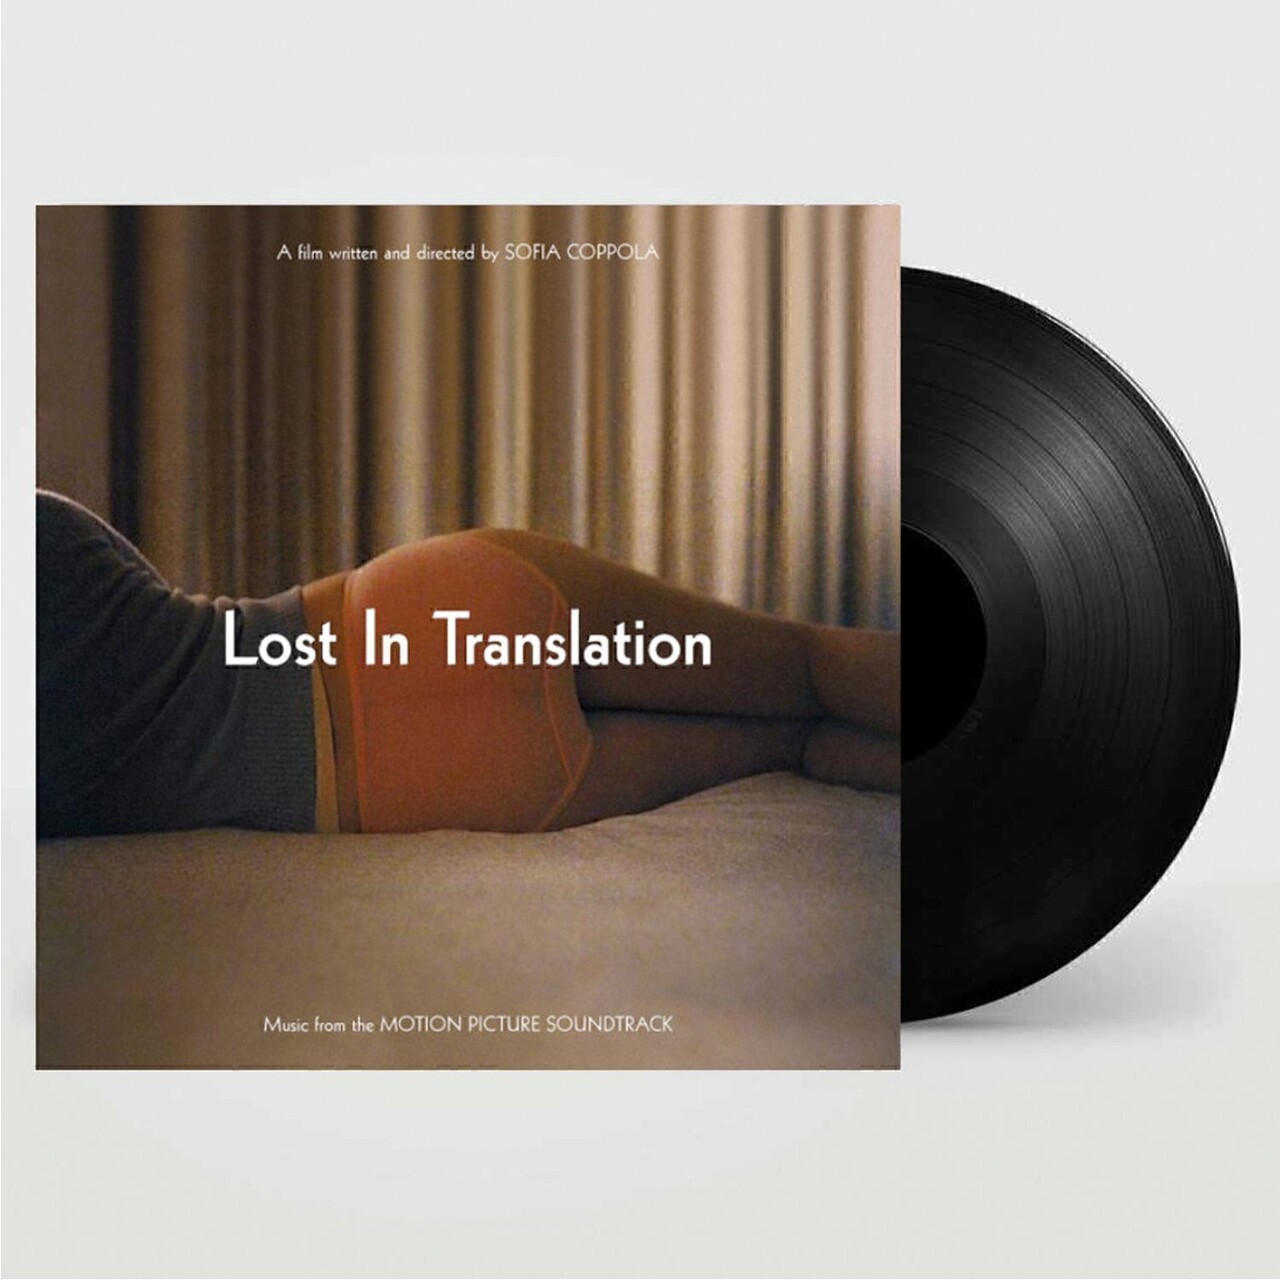 最安値 Translation In Lost オリジナル盤 LP レコード 洋楽 